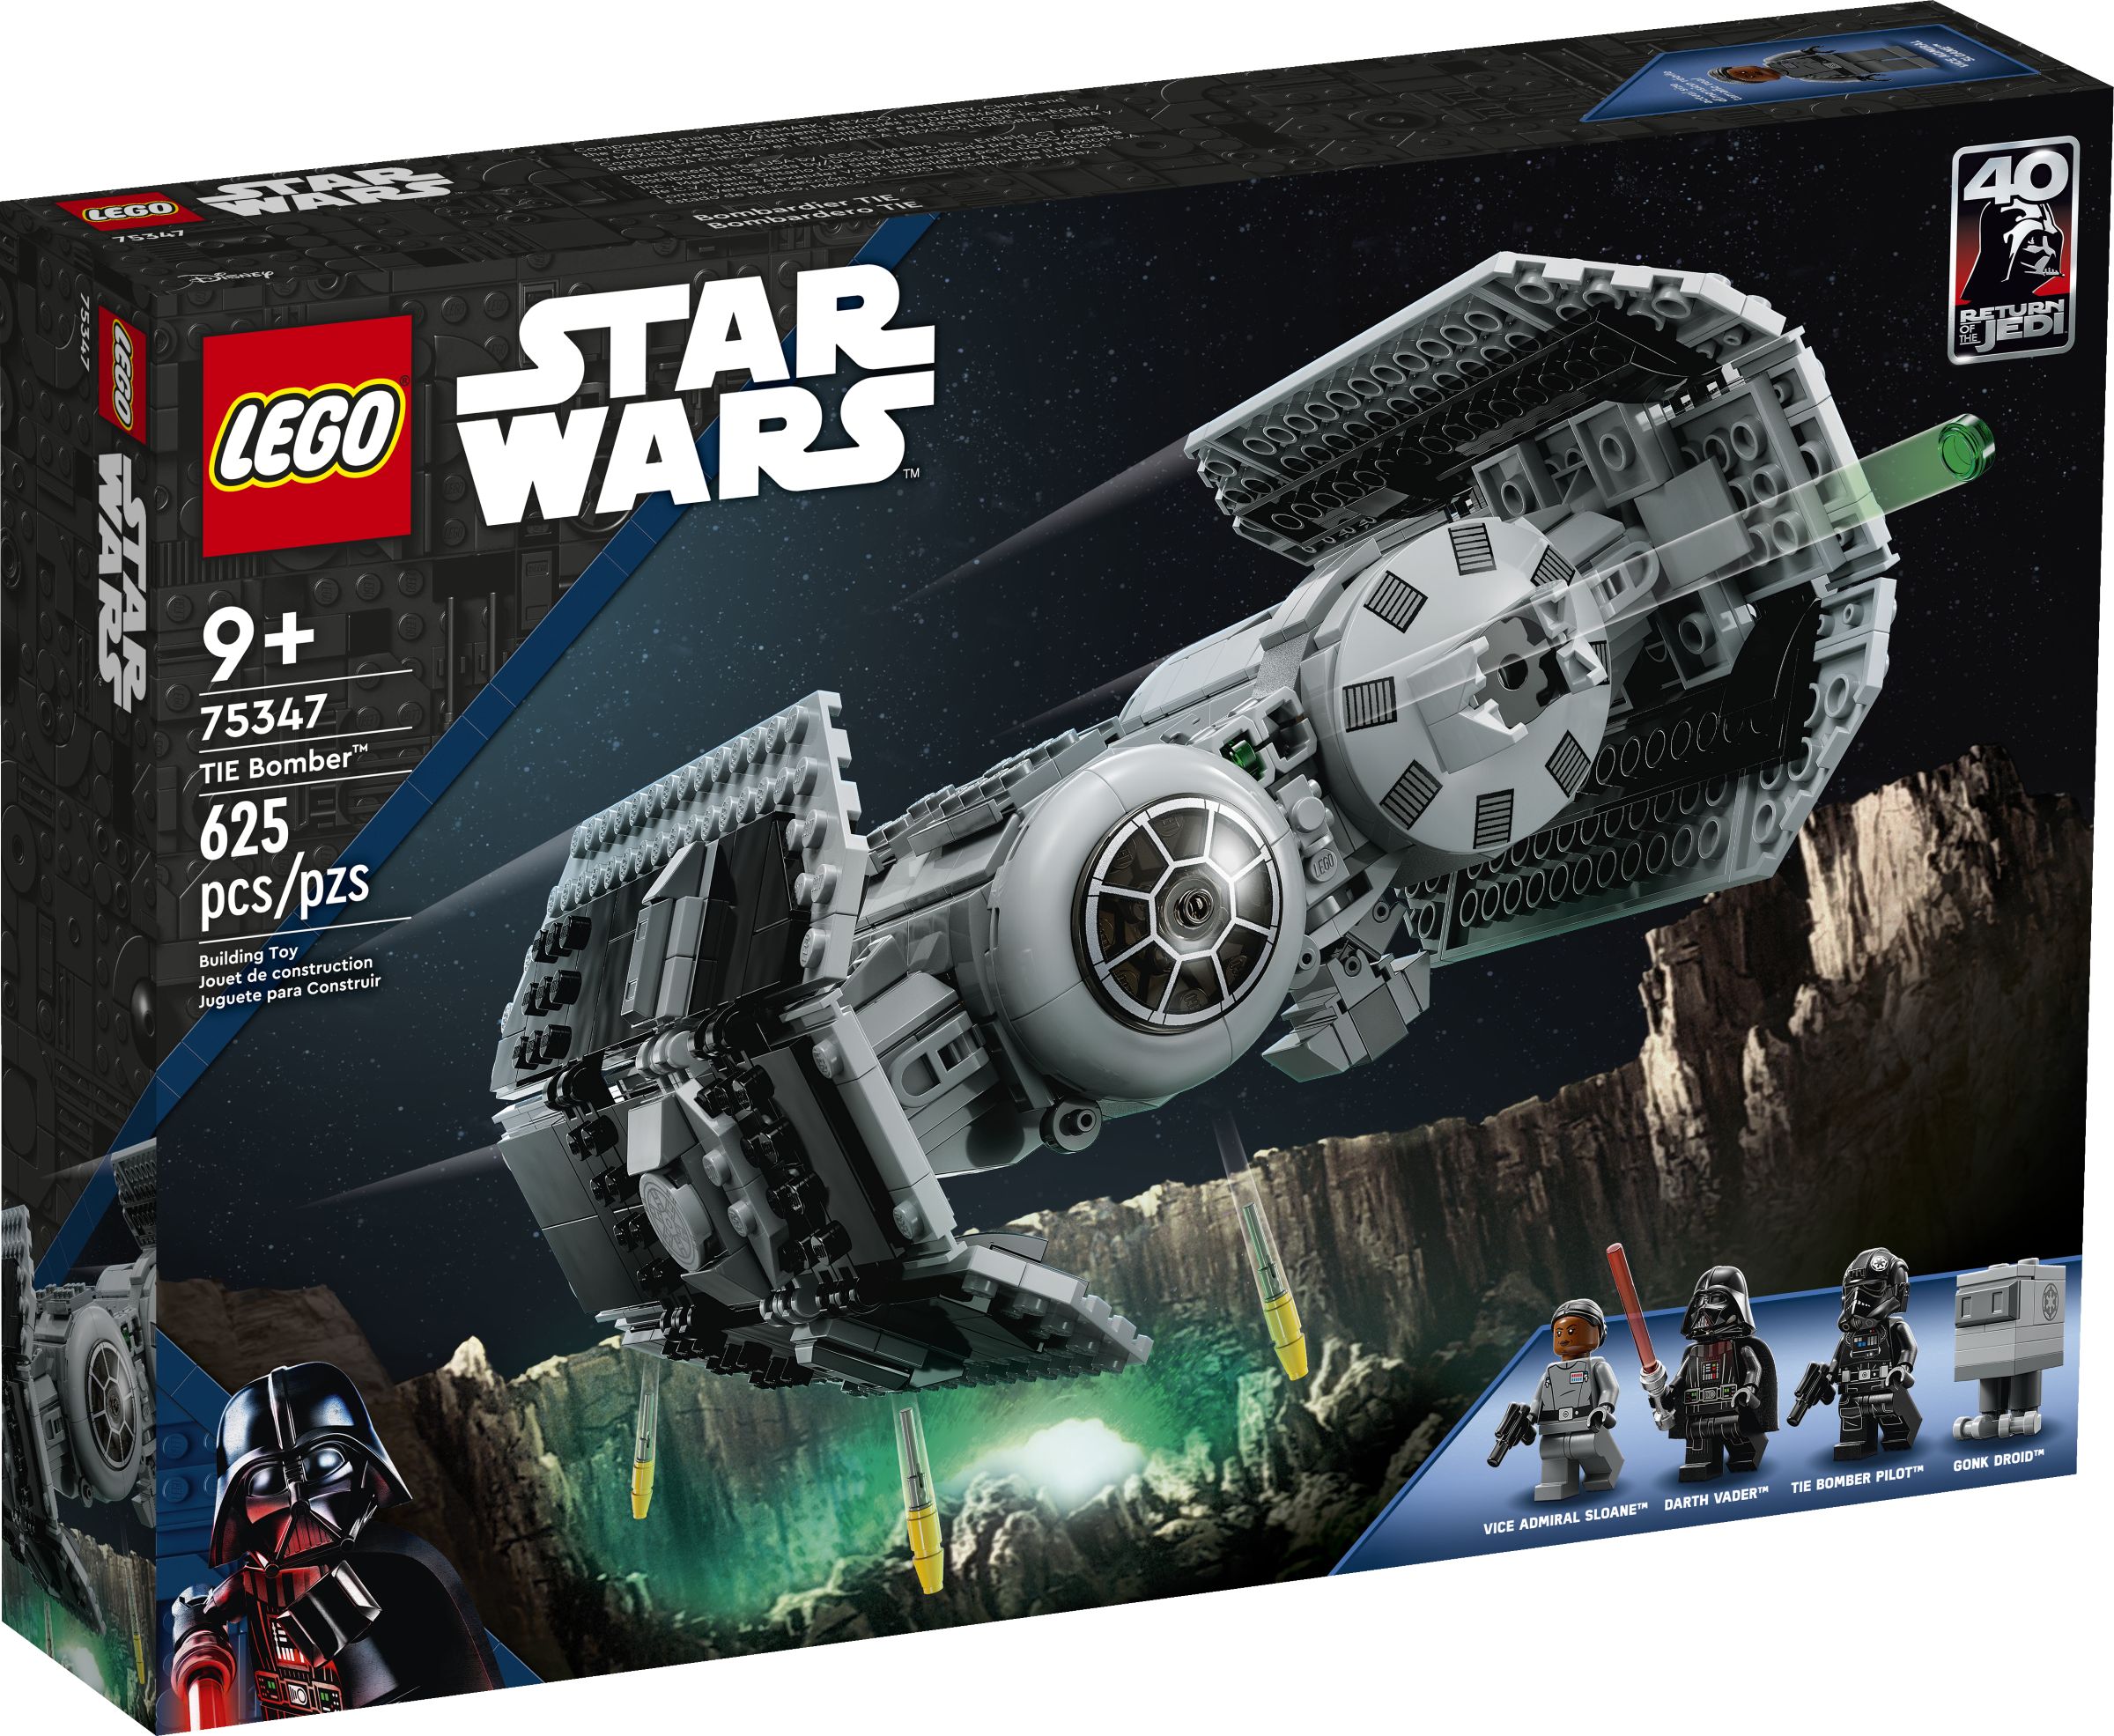 LEGO Star Wars 5008118 Dunkle Seite Paket LEGO_75347_alt1.jpg